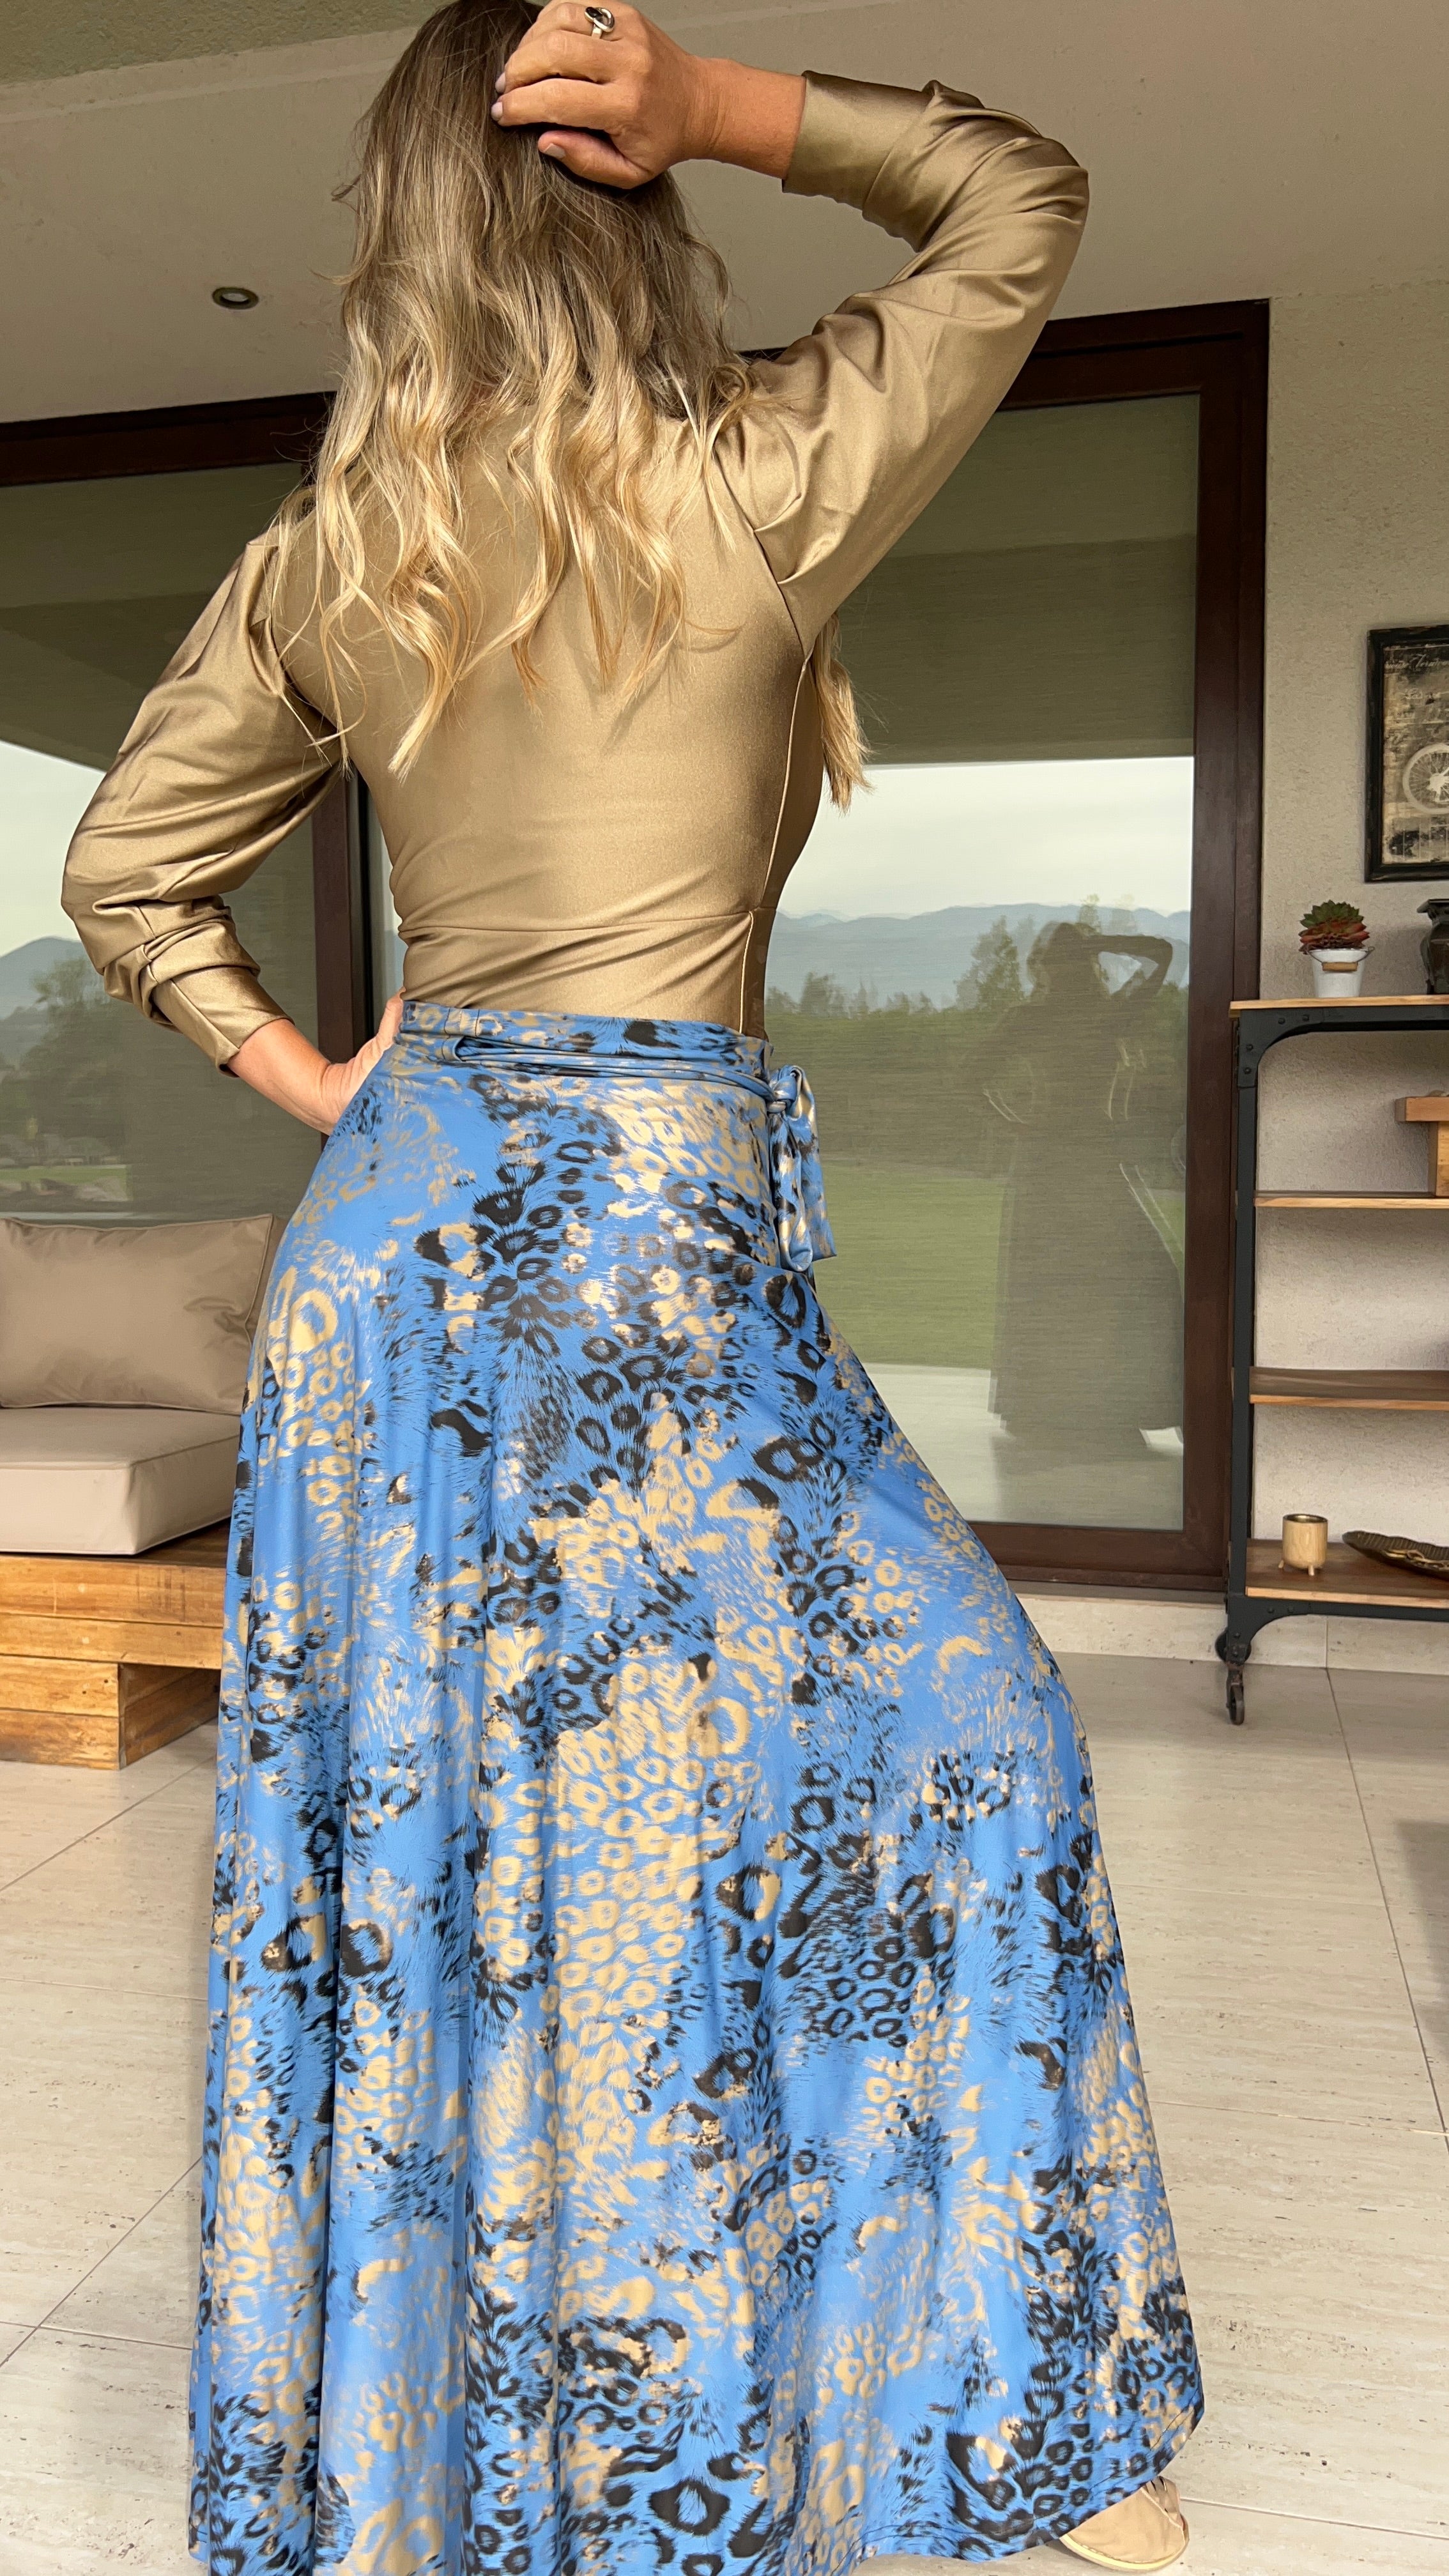 Falda envolvente Dupont print azul lavanda y dorado| falda pareo print fiesta| Amoramar.cl 3